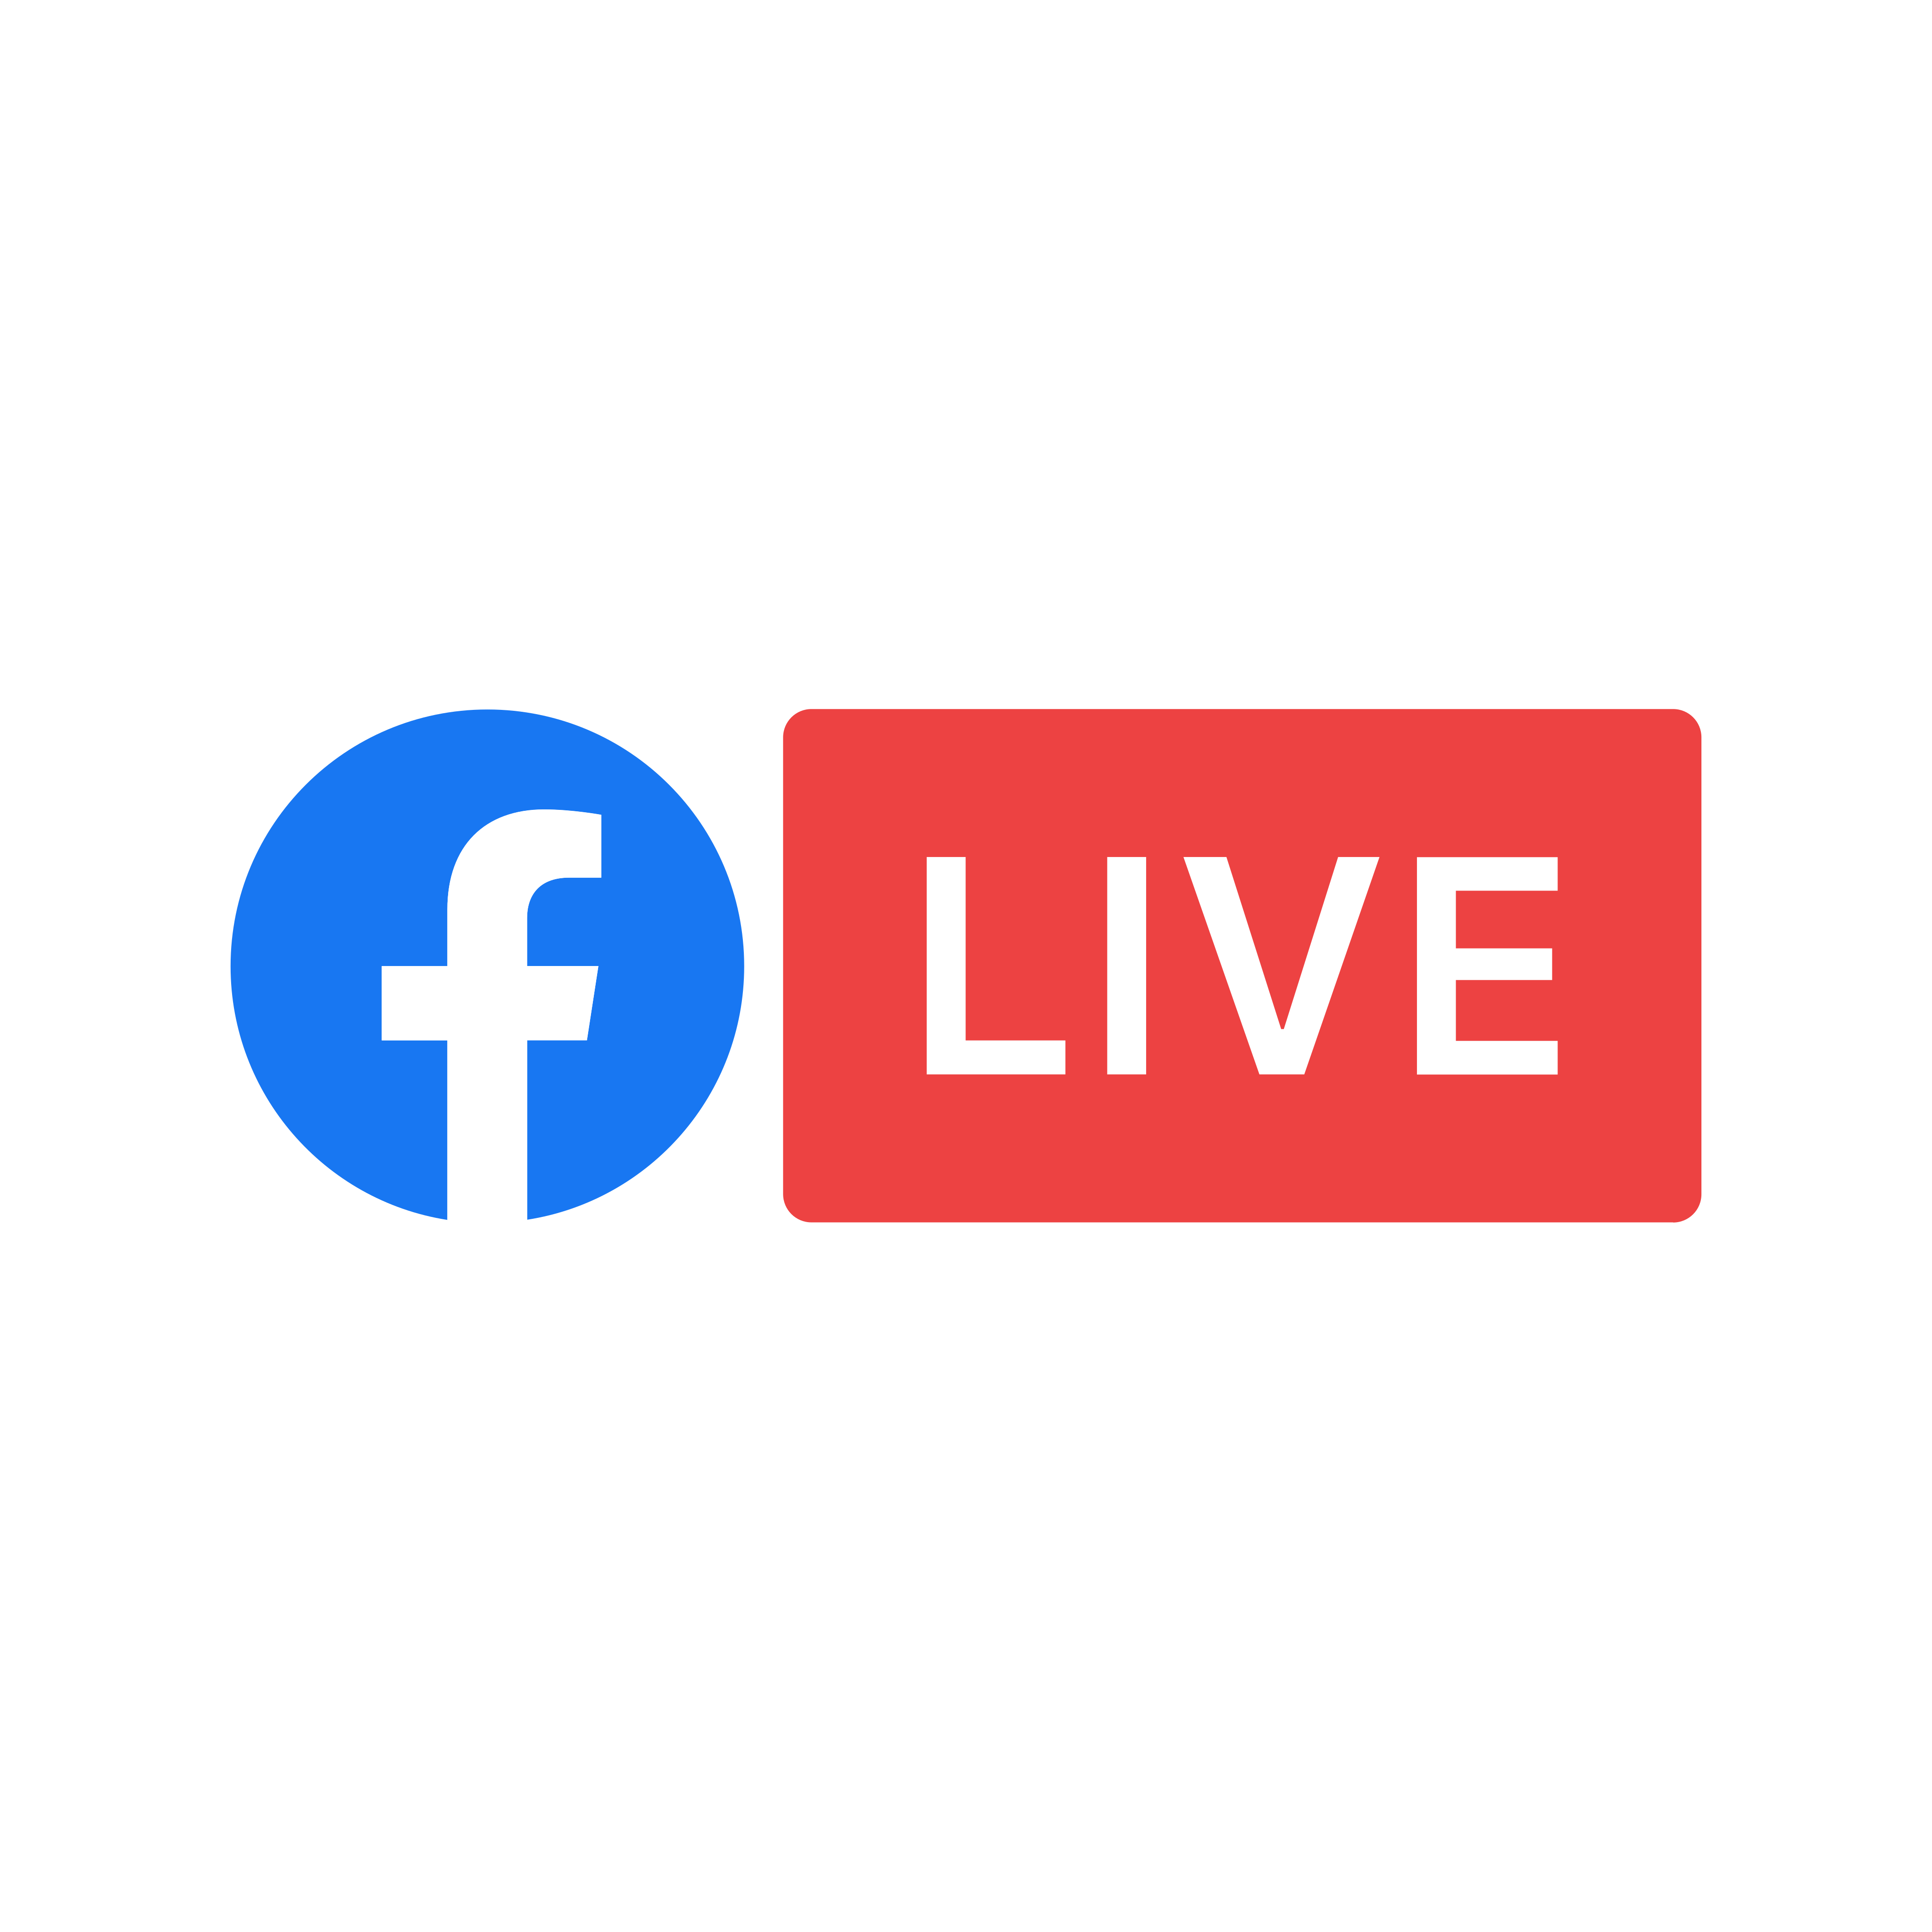 download facebook live video online